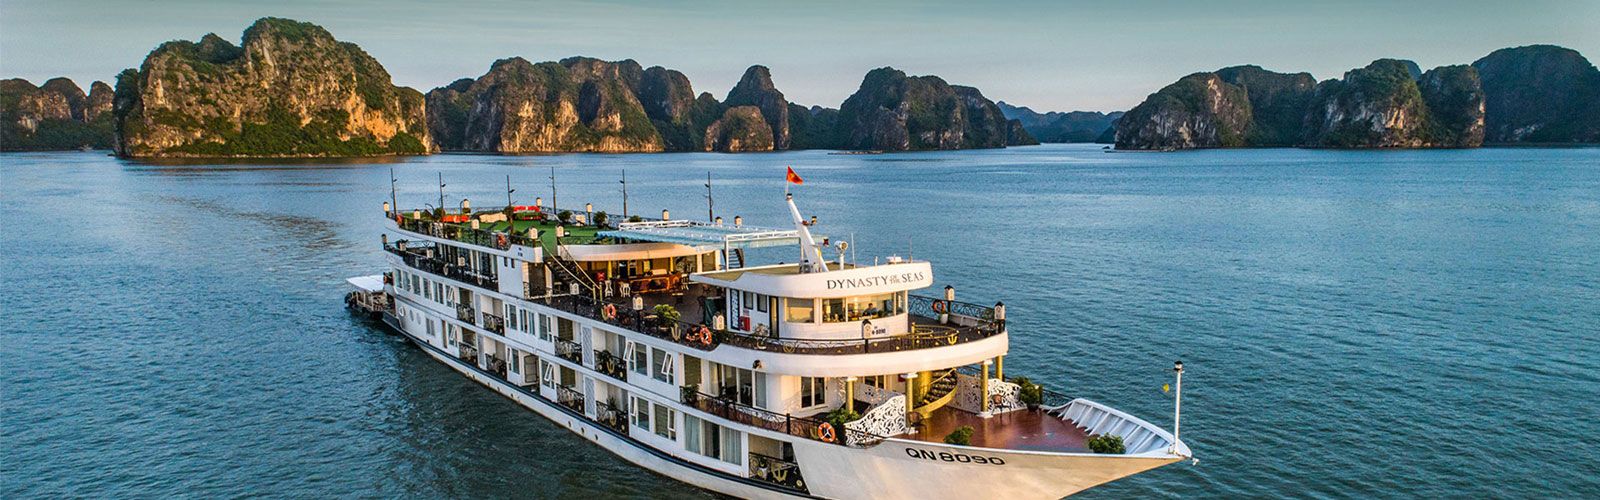 Laos Cruise Tours